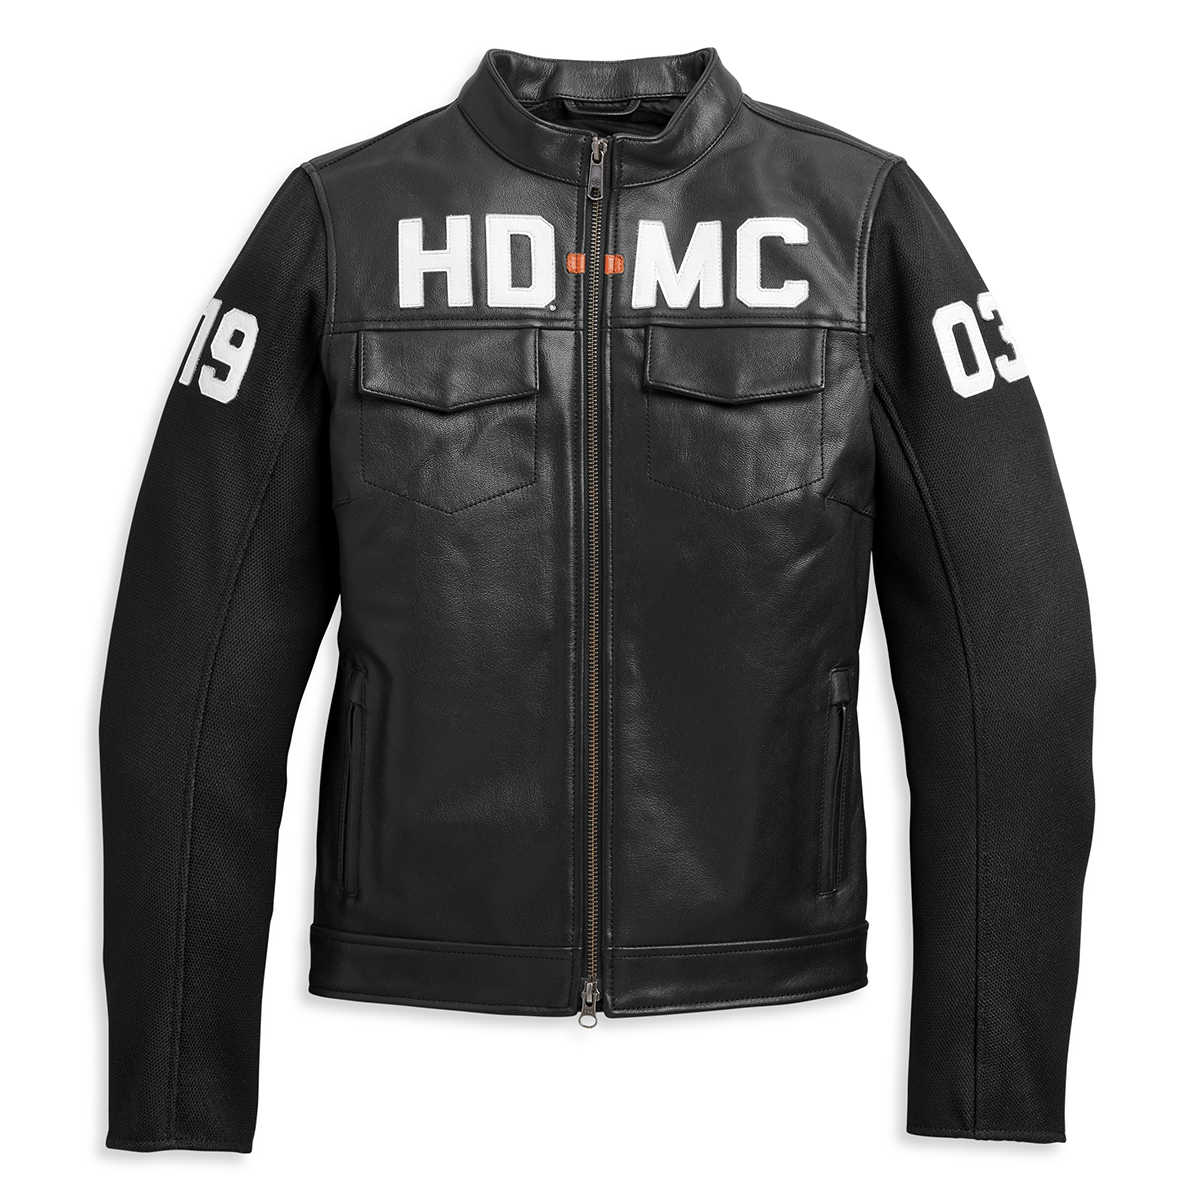 Harley-Davidson HD-MC Mixed Media Women's Bomber Jacket